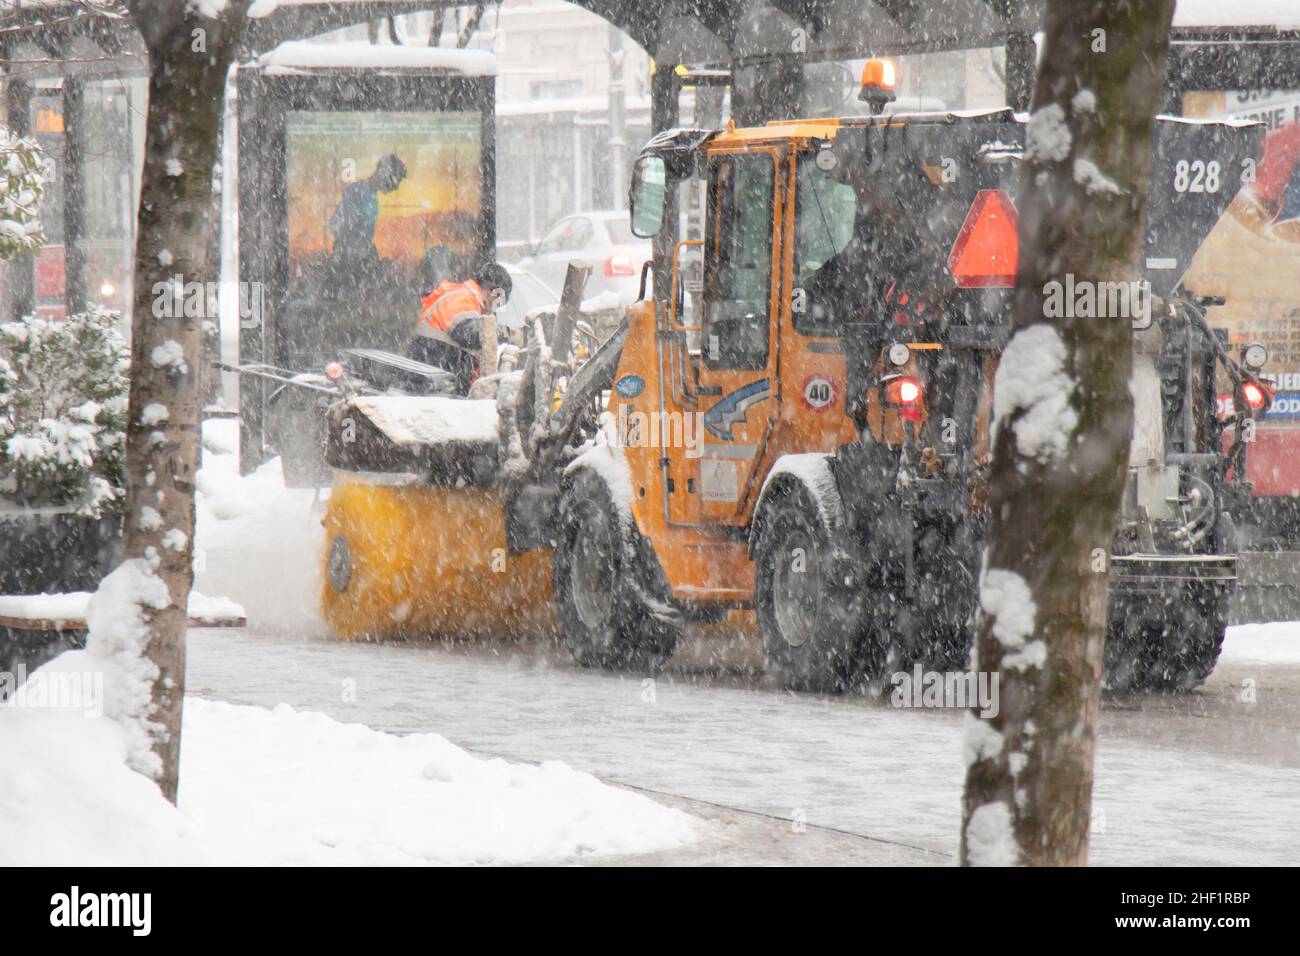 Belgrado, Serbia - 11 de enero de 2022: Quitar y limpiar un polvo nevado ligero de la calle de la ciudad con vehículo de escoba de nieve en la acera, mantenimiento de invierno Foto de stock